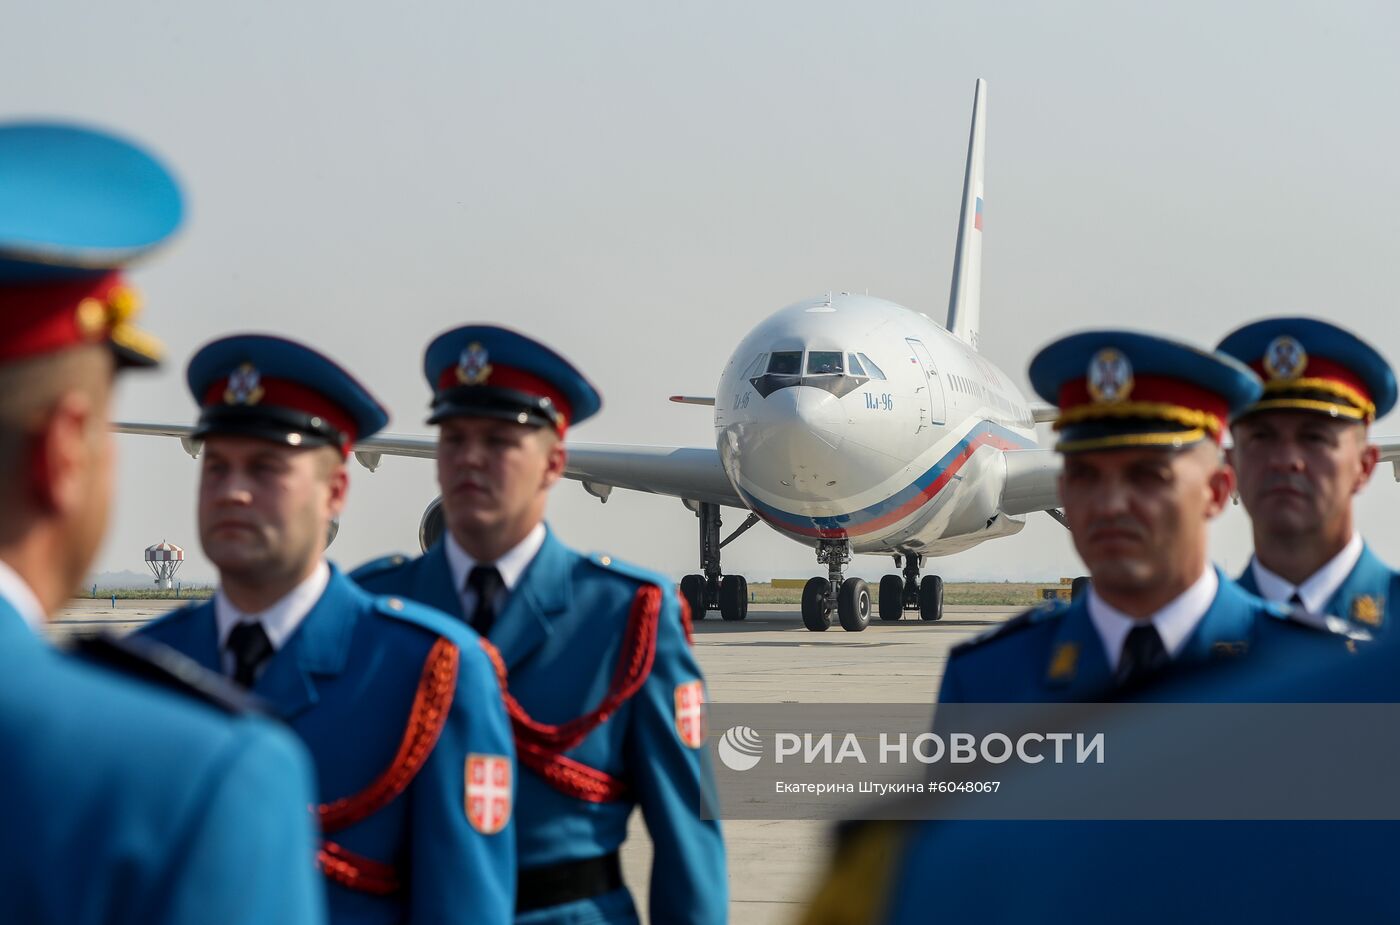 Визит премьер-министра РФ Д. Медведева в Сербию